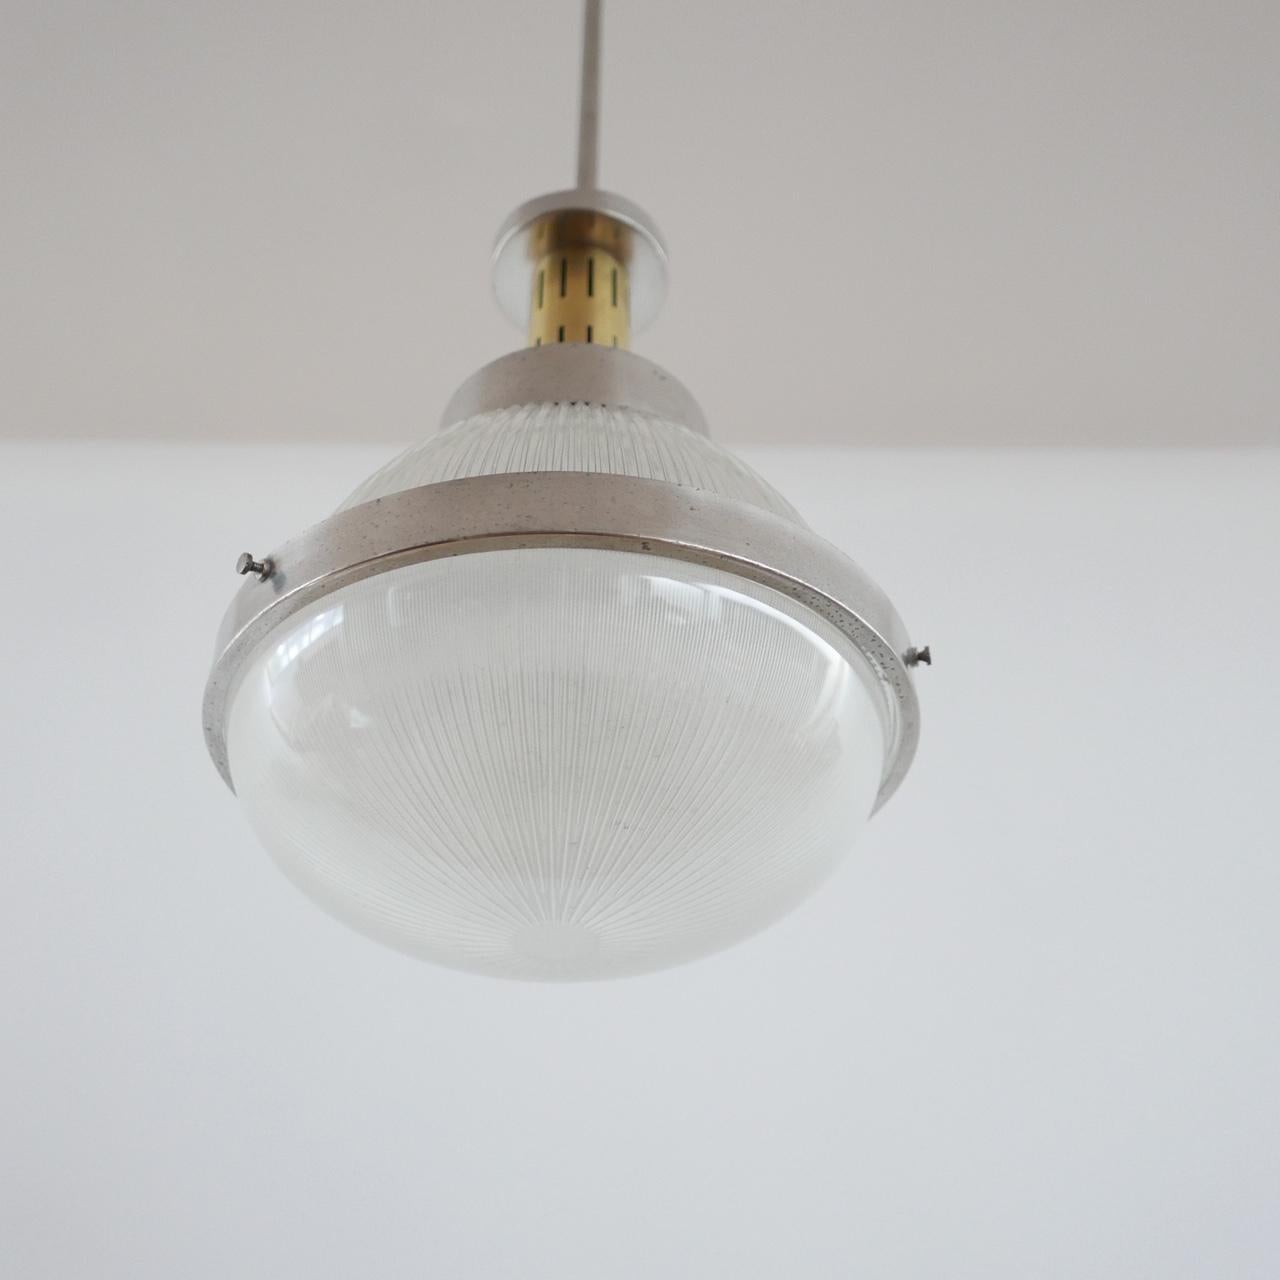 Italian Pendant Light Attributed to Ignazio Gardella In Excellent Condition For Sale In London, GB